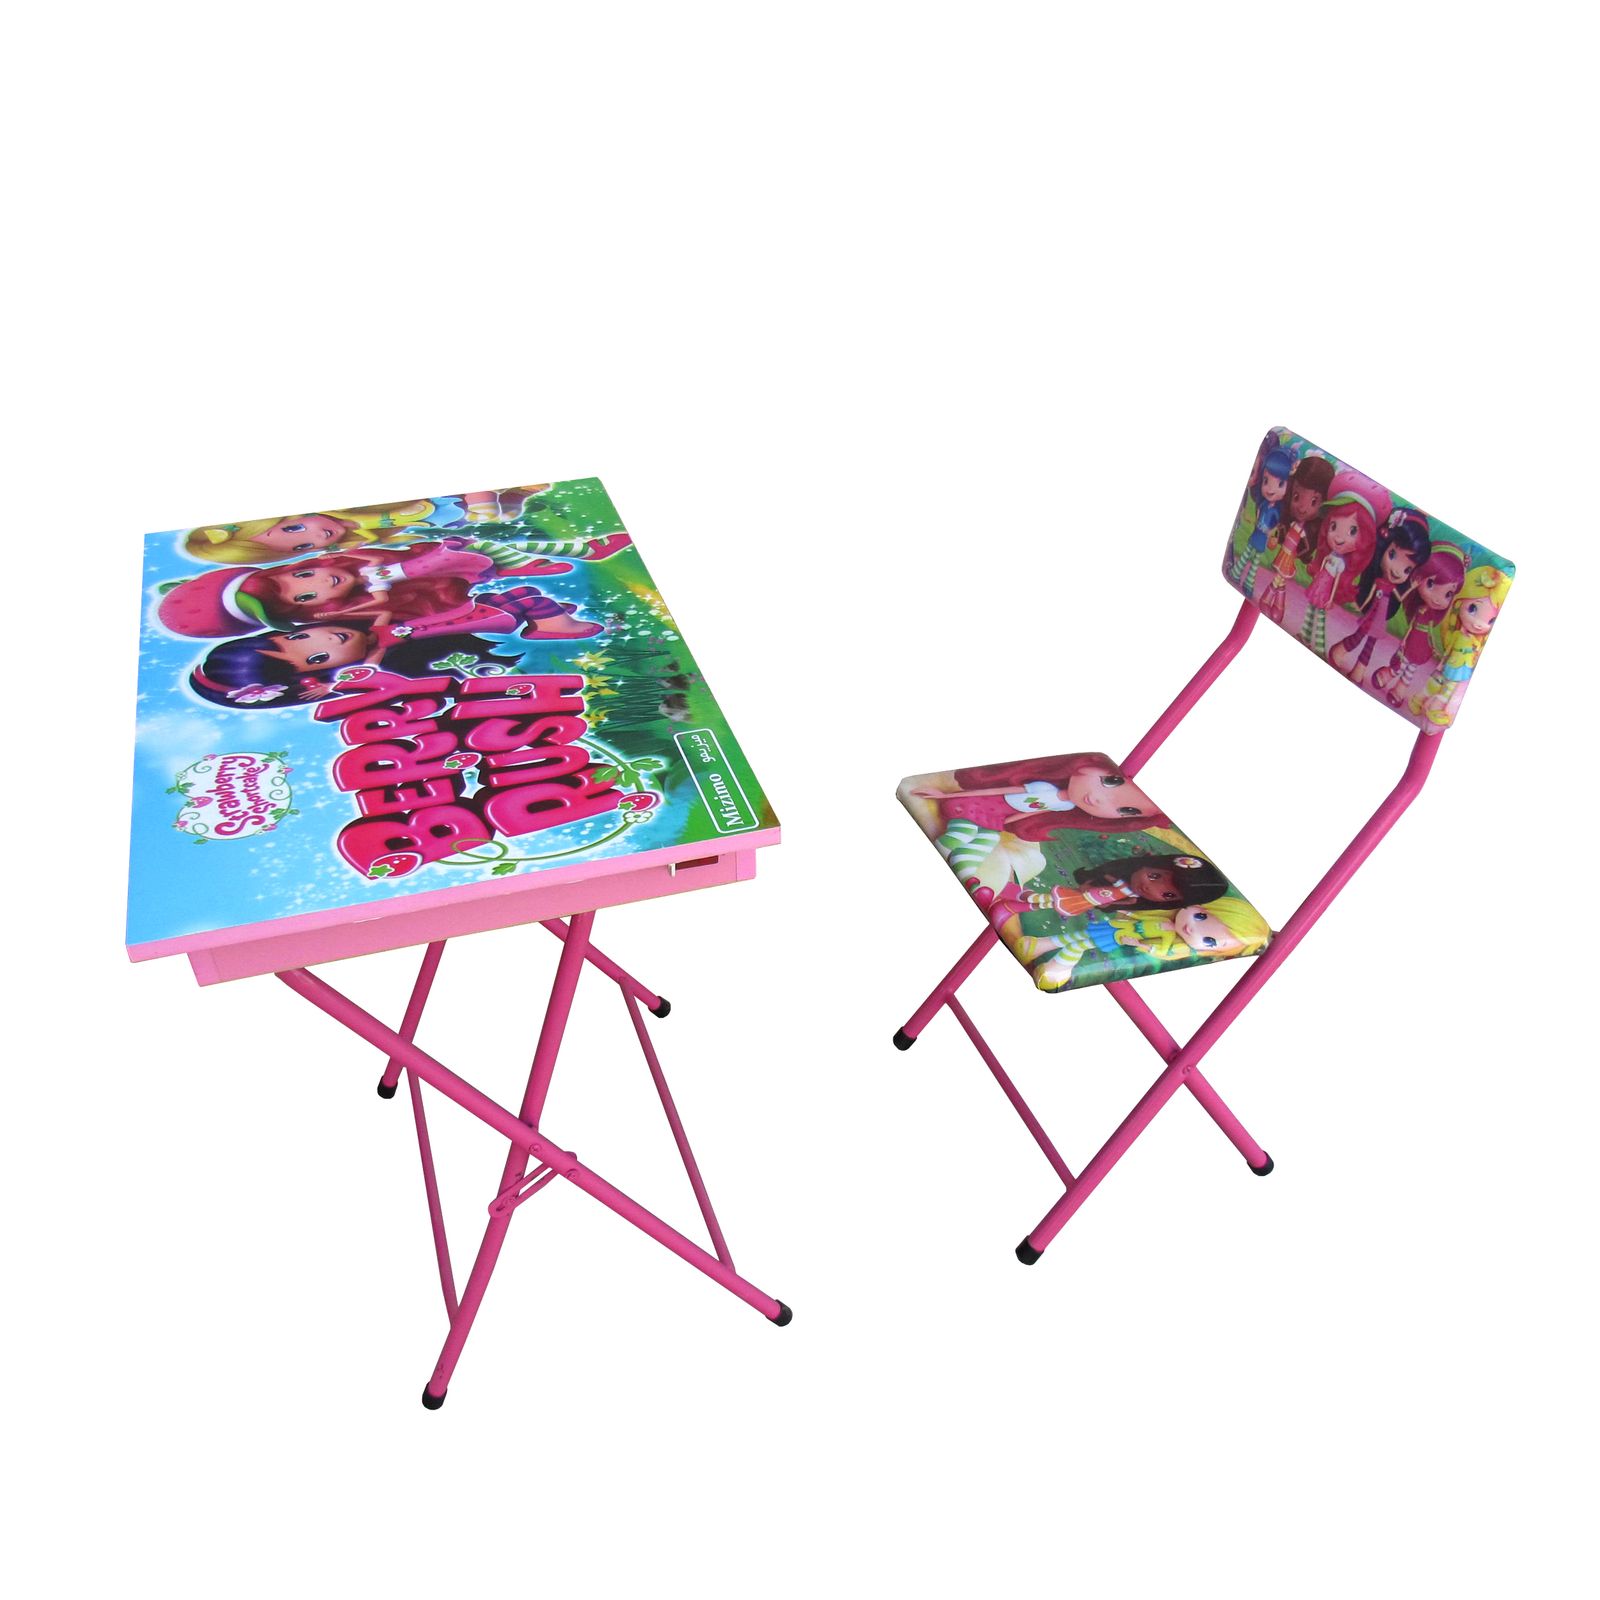 ست میز و صندلی کودک میزیمو مدل توت فرنگی کد 51 -  - 1